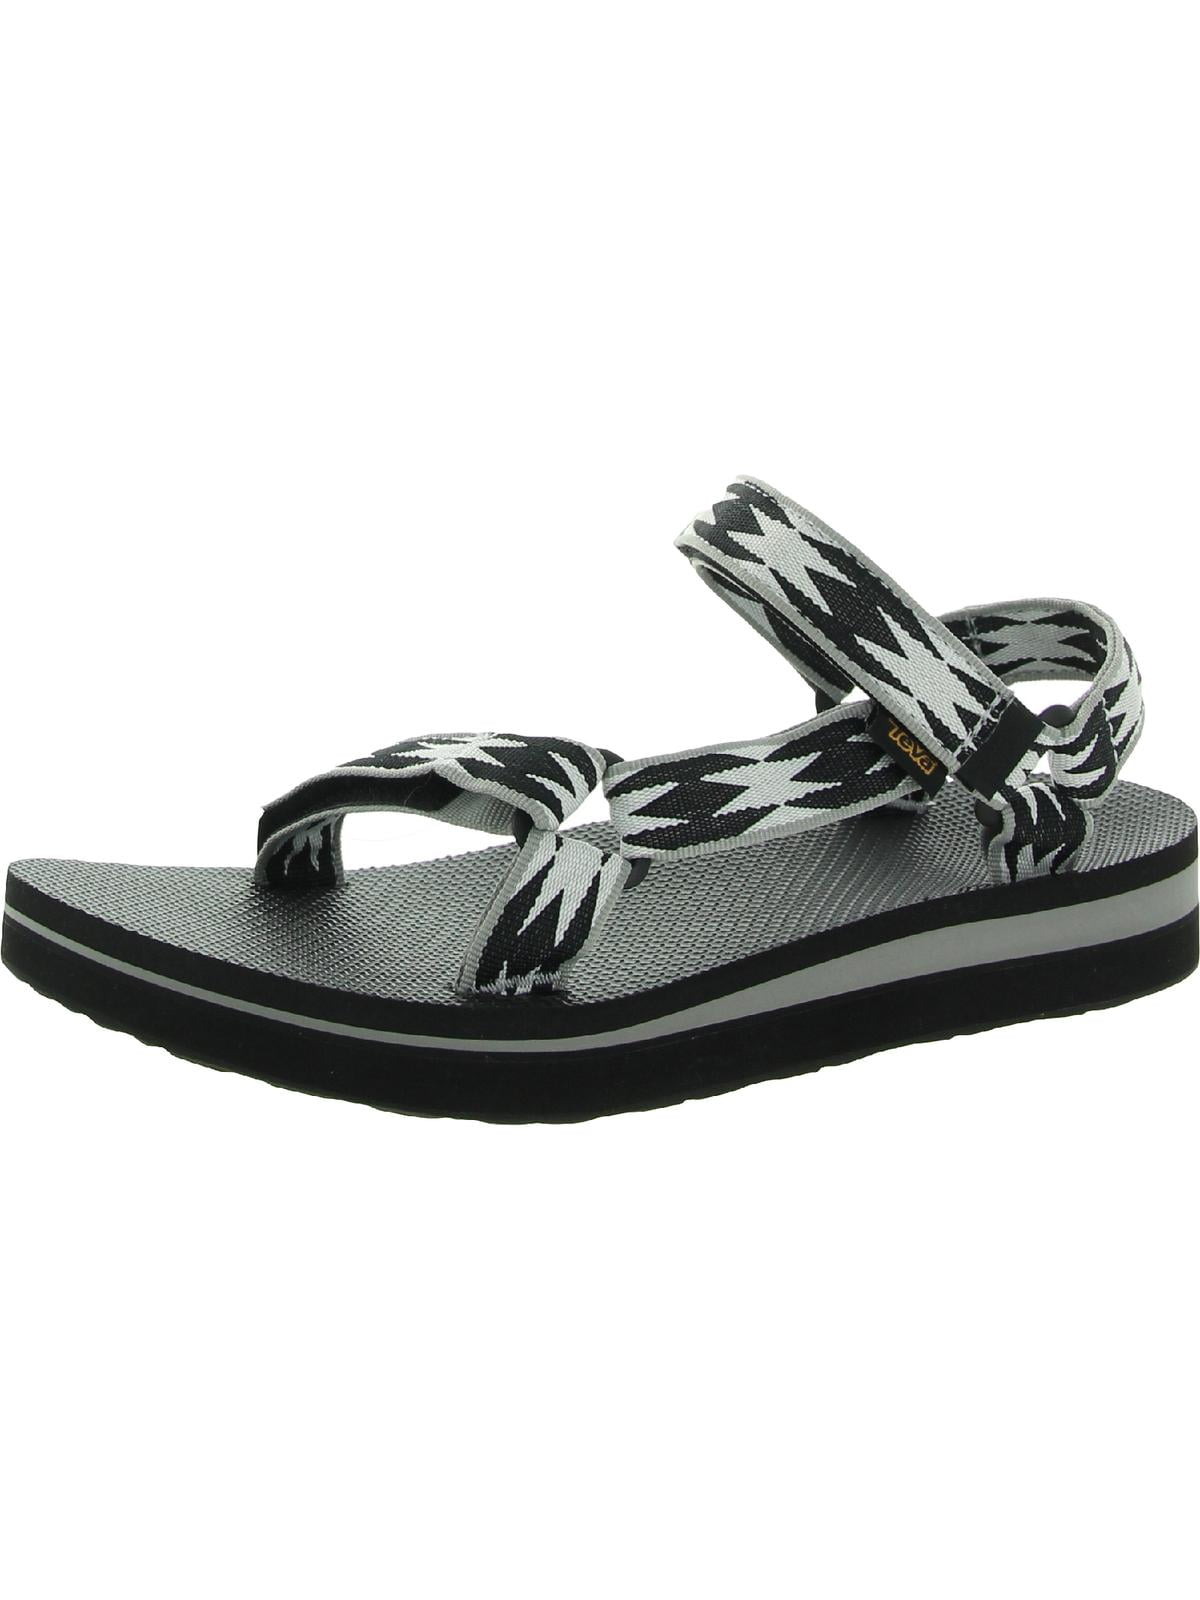 Teva Midform Universal Woven Strap Sport Sandals - Walmart.com